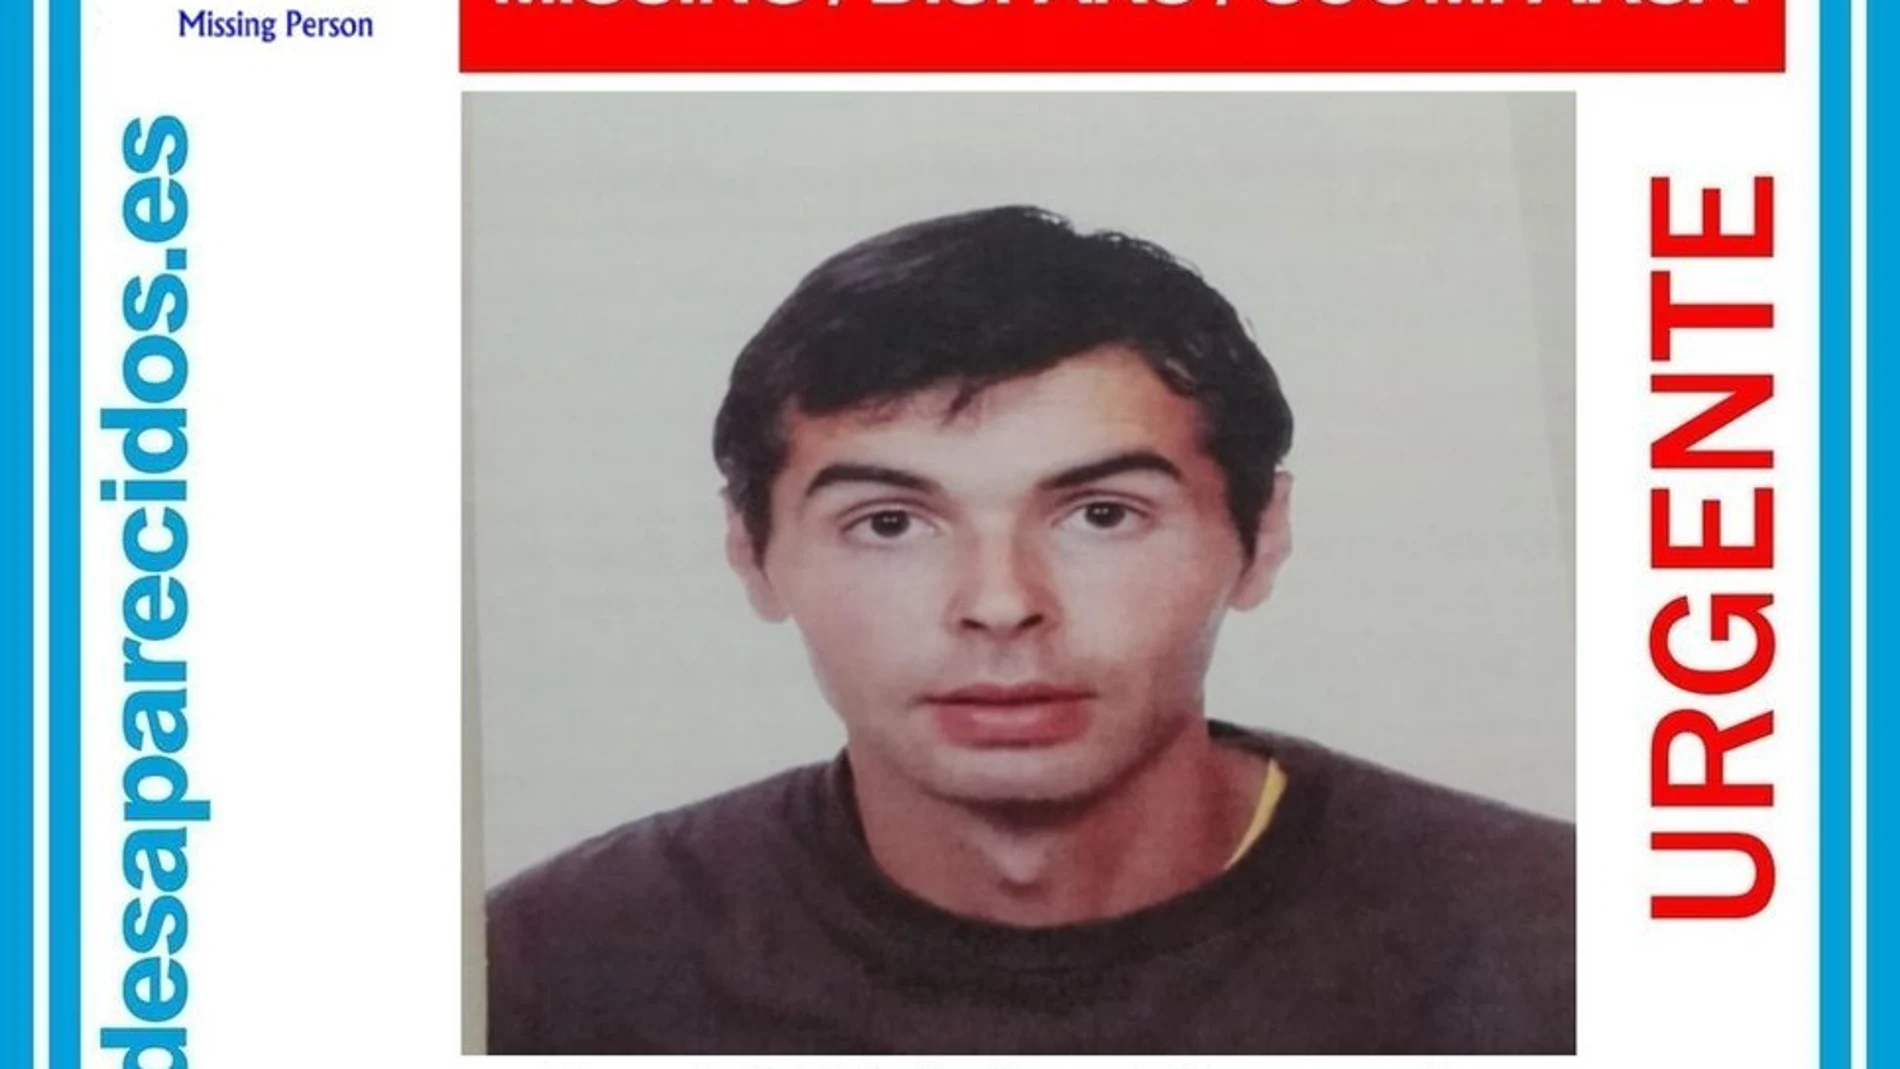 Davil Hidalgo Morgado, el joven desaparecido en Campillos